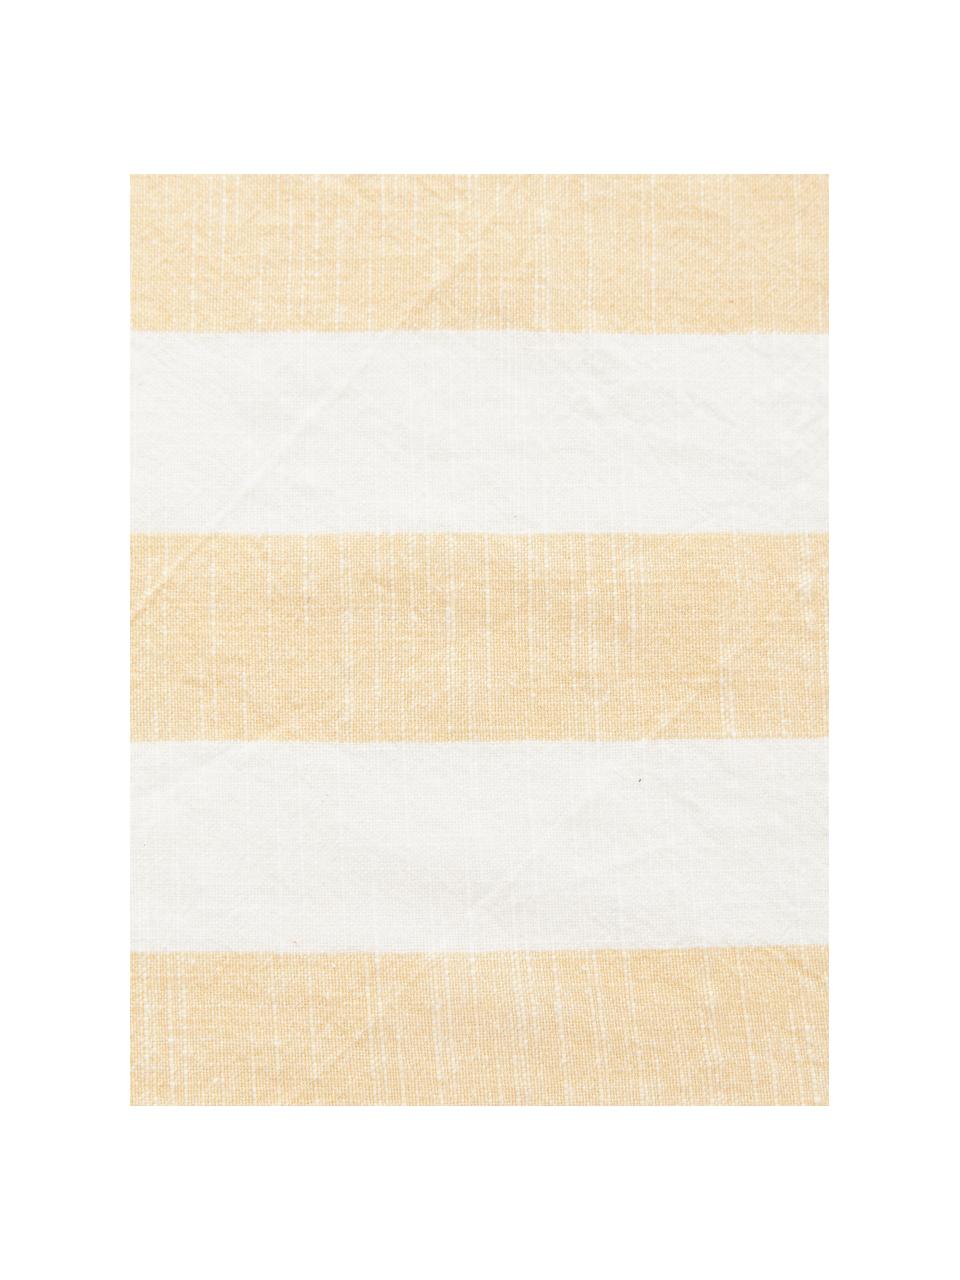 Serwetka z bawełny, 2 szt., 100% bawełna, Żółty, biały, S 45 x D 45 cm